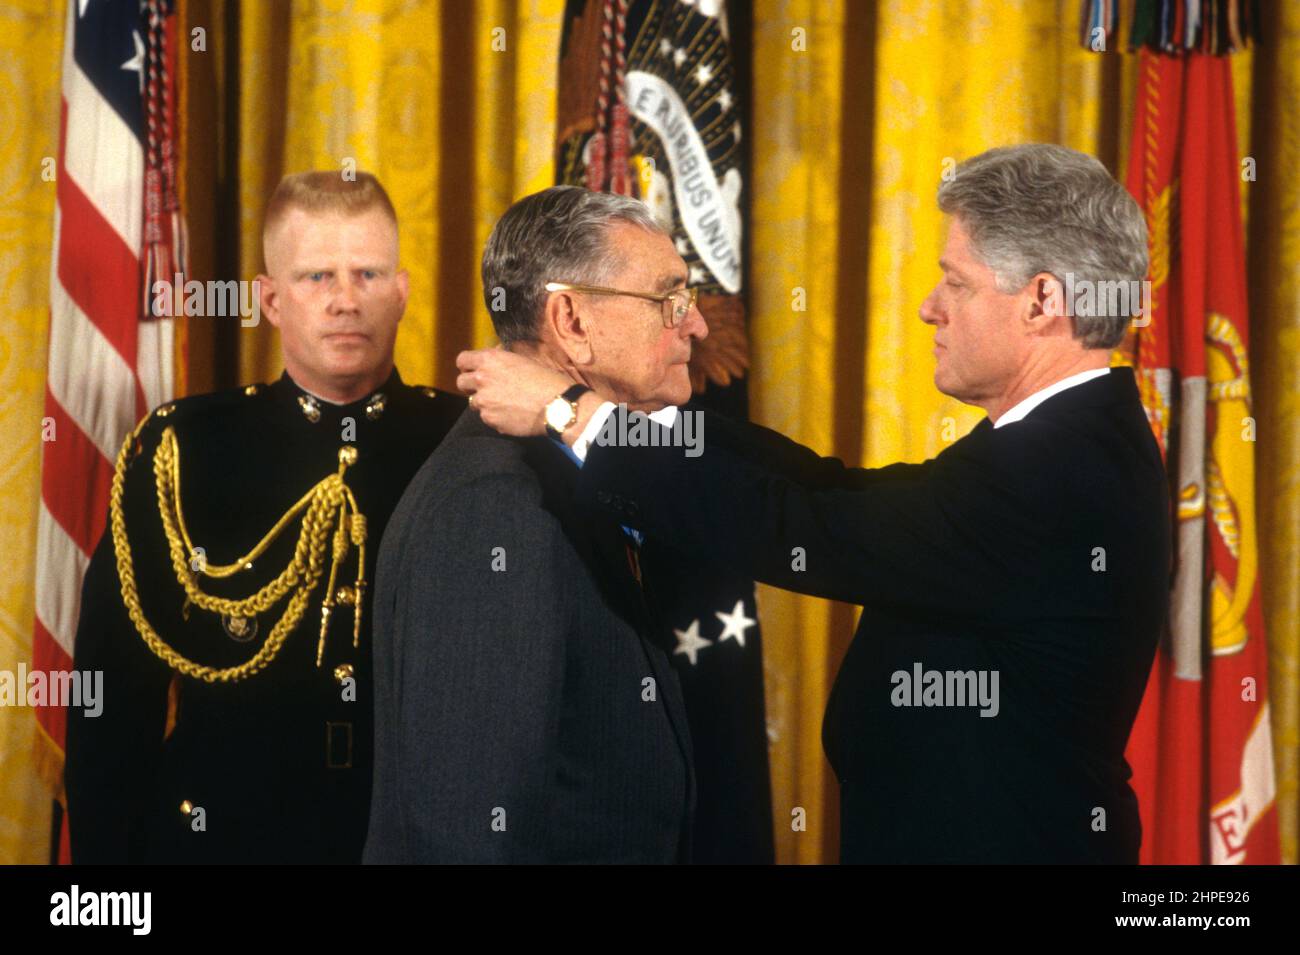 Le président américain Bill Clinton présente le major de la Marine à la retraite, le général James L. Day, à gauche, avec la Médaille d'honneur lors de la cérémonie de présentation dans la salle est de la Maison Blanche, le 20 janvier 1998 à Washington, D.C. Day a reçu la Médaille d'honneur pour ses actions héroïques durant la bataille d'Okinawa pendant la Seconde Guerre mondiale Banque D'Images